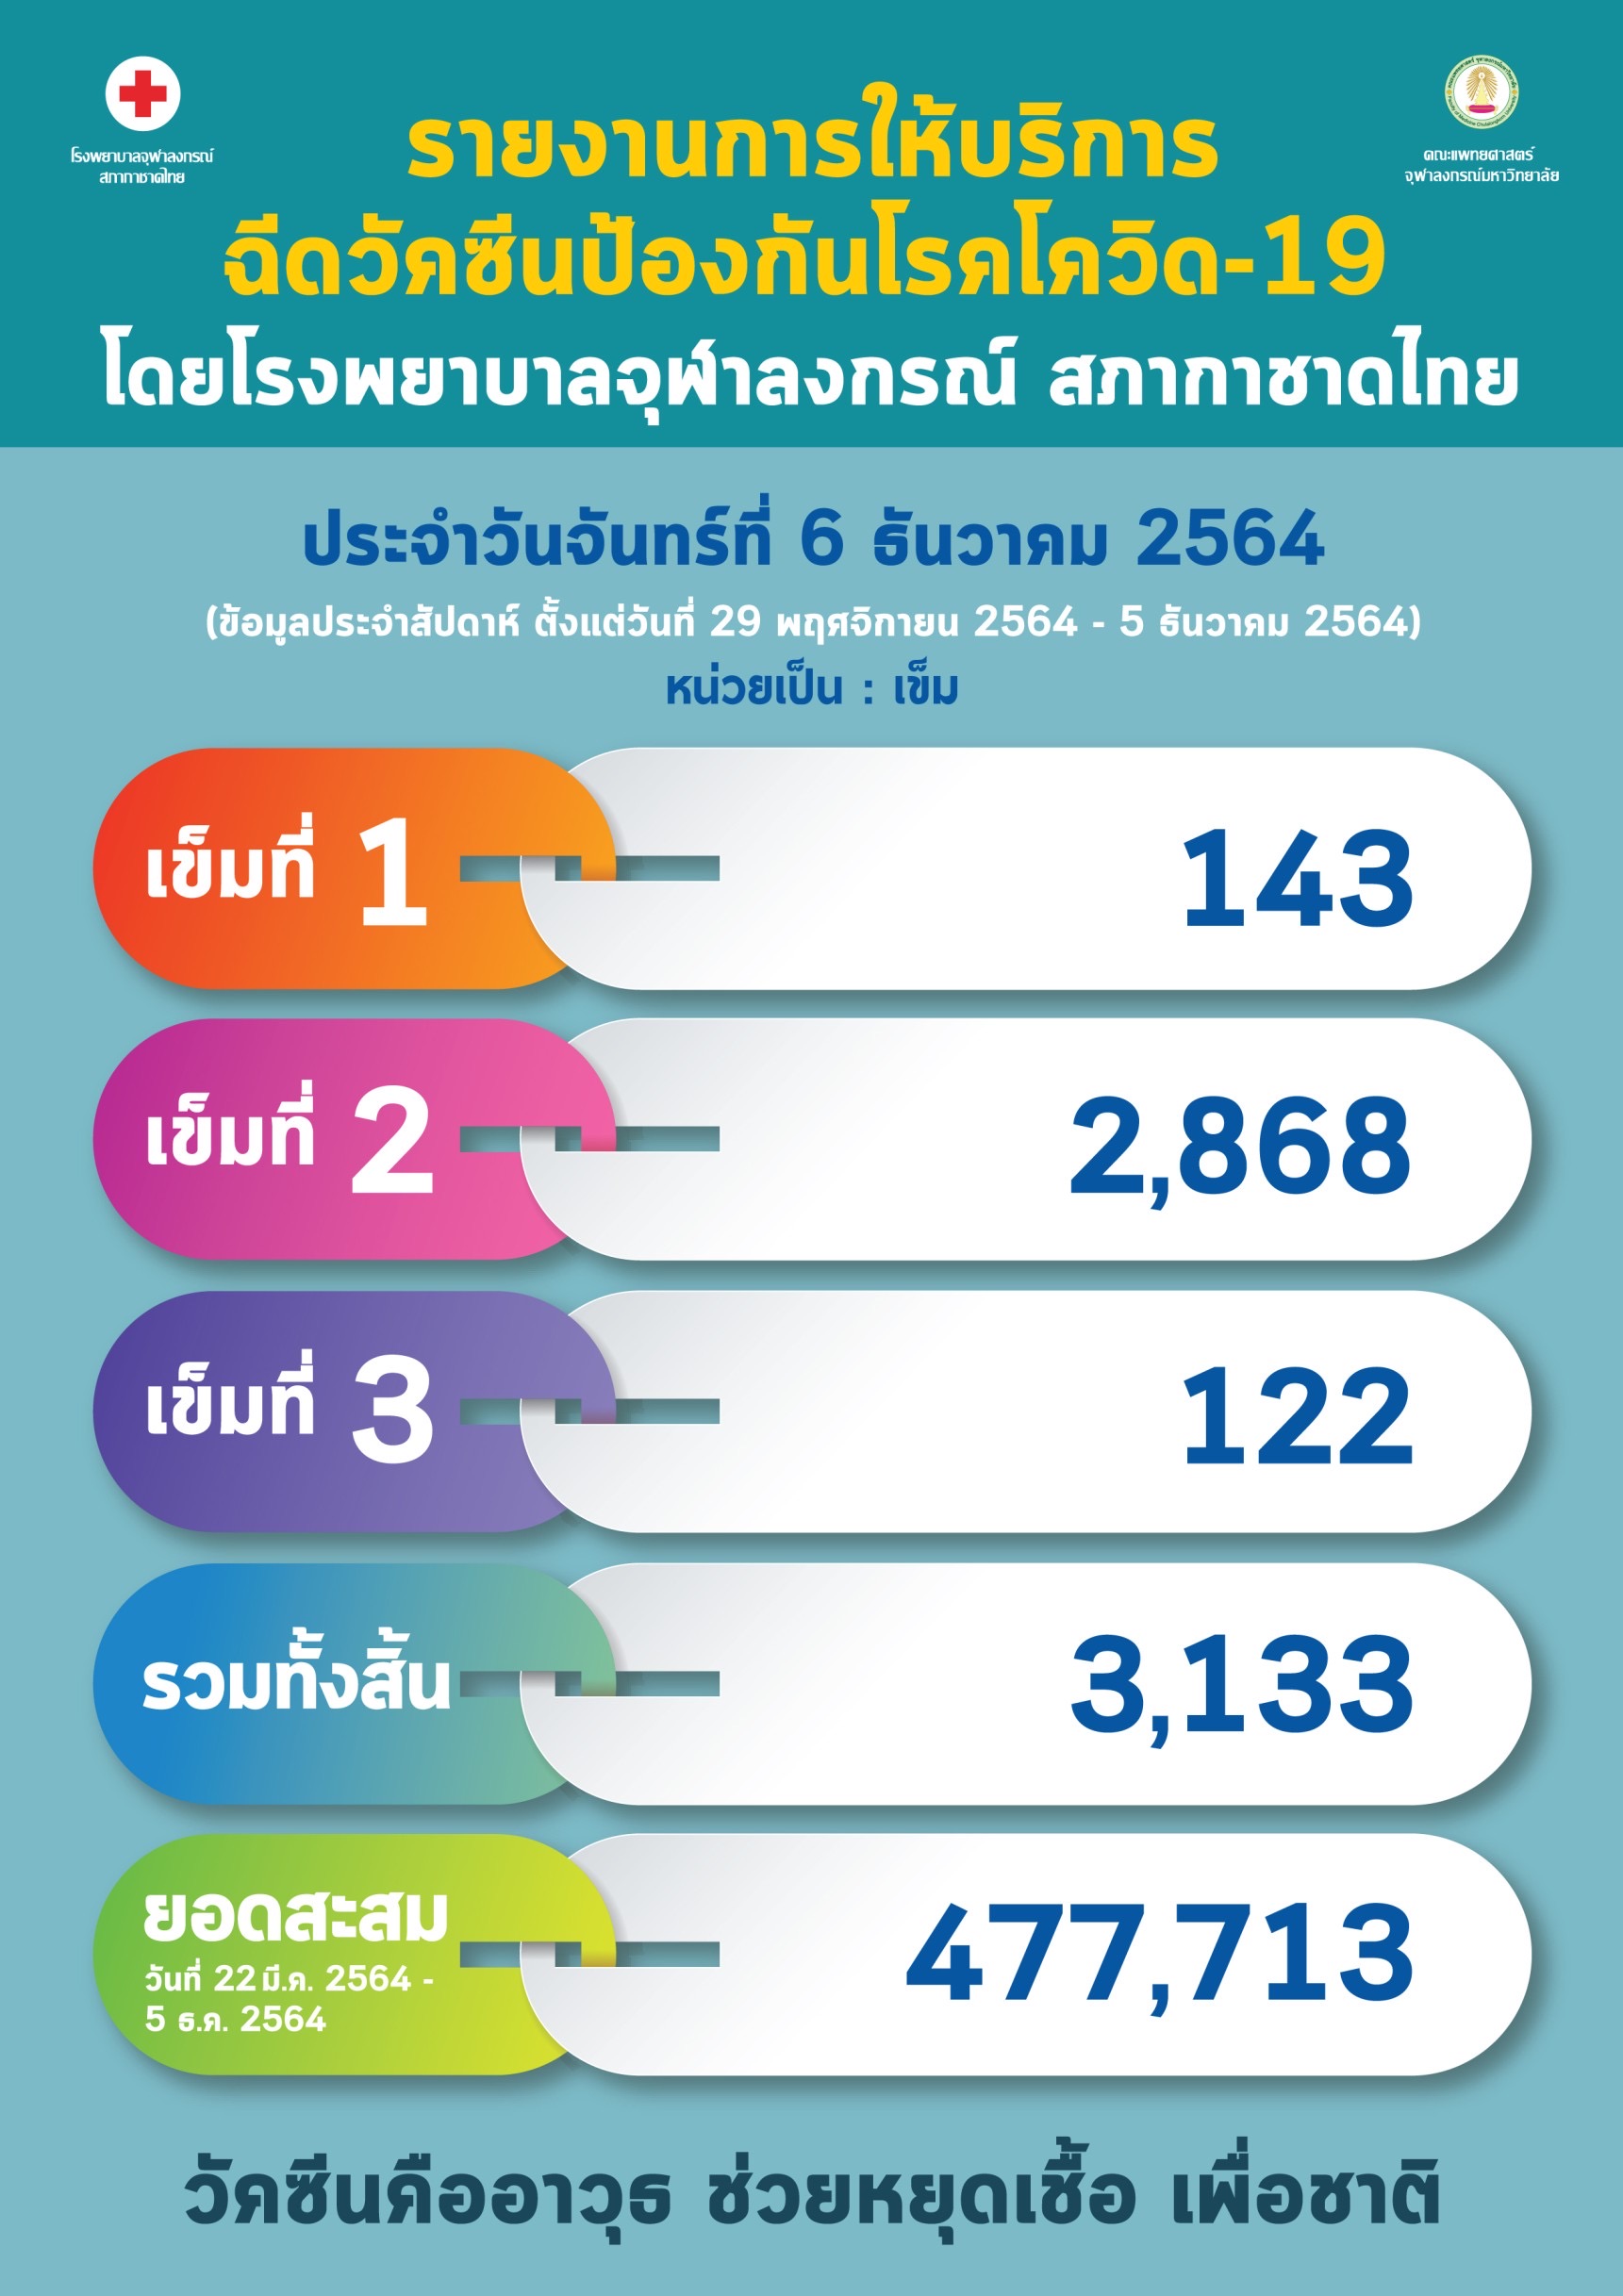 รายงานการให้บริการ ฉีดวัคซีนป้องกันโรคโควิด-19 โดยโรงพยาบาลจุฬาลงกรณ์ สภากาชาดไทย ประจำวันจันทร์ที่ 6 ธันวาคม 2564